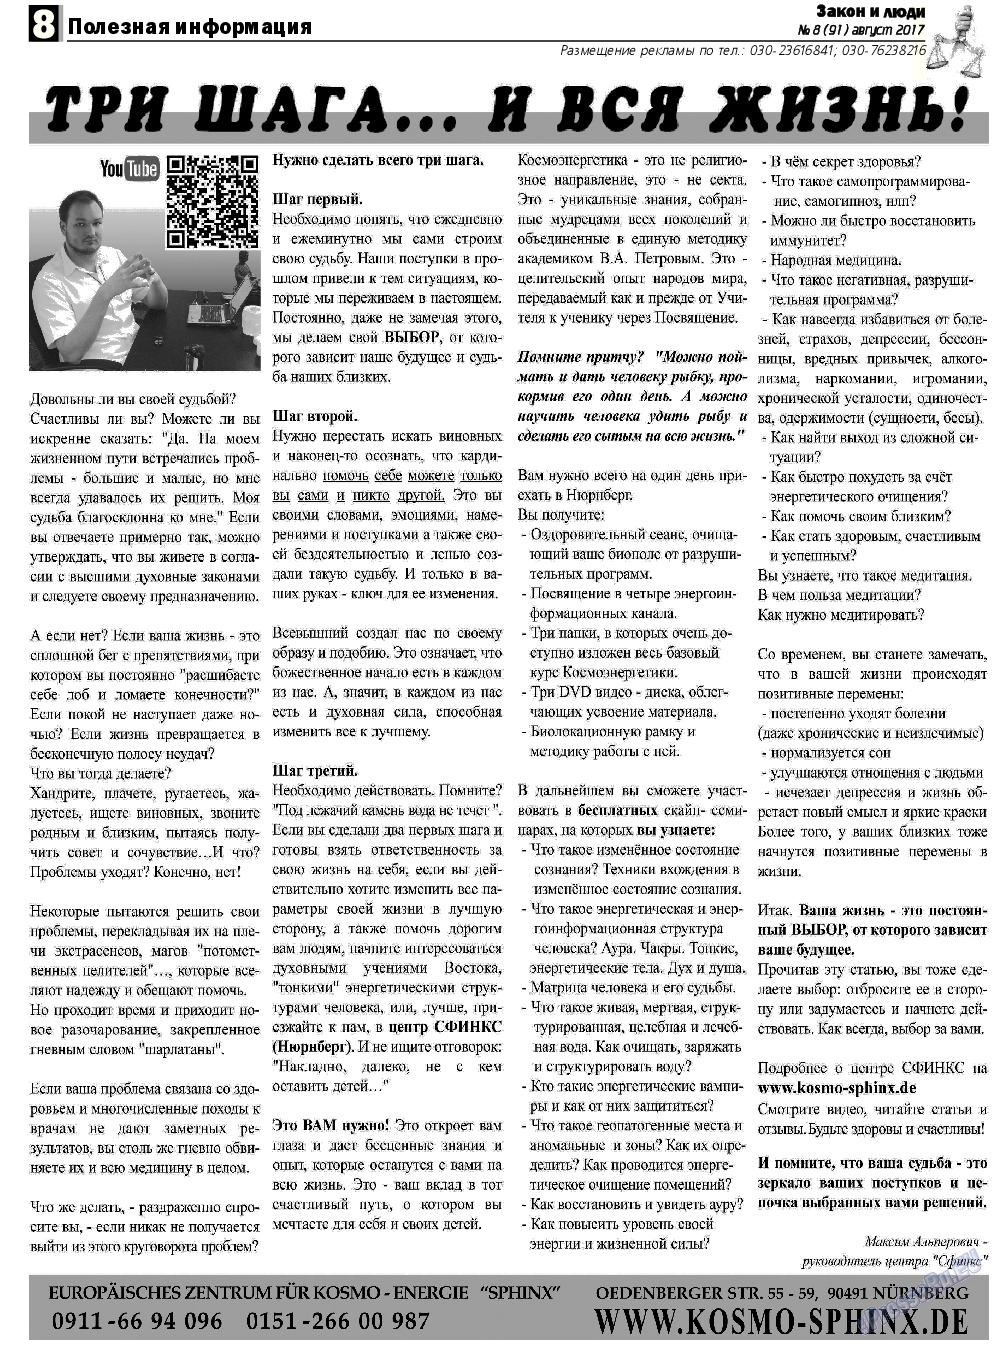 Закон и люди, газета. 2017 №8 стр.8